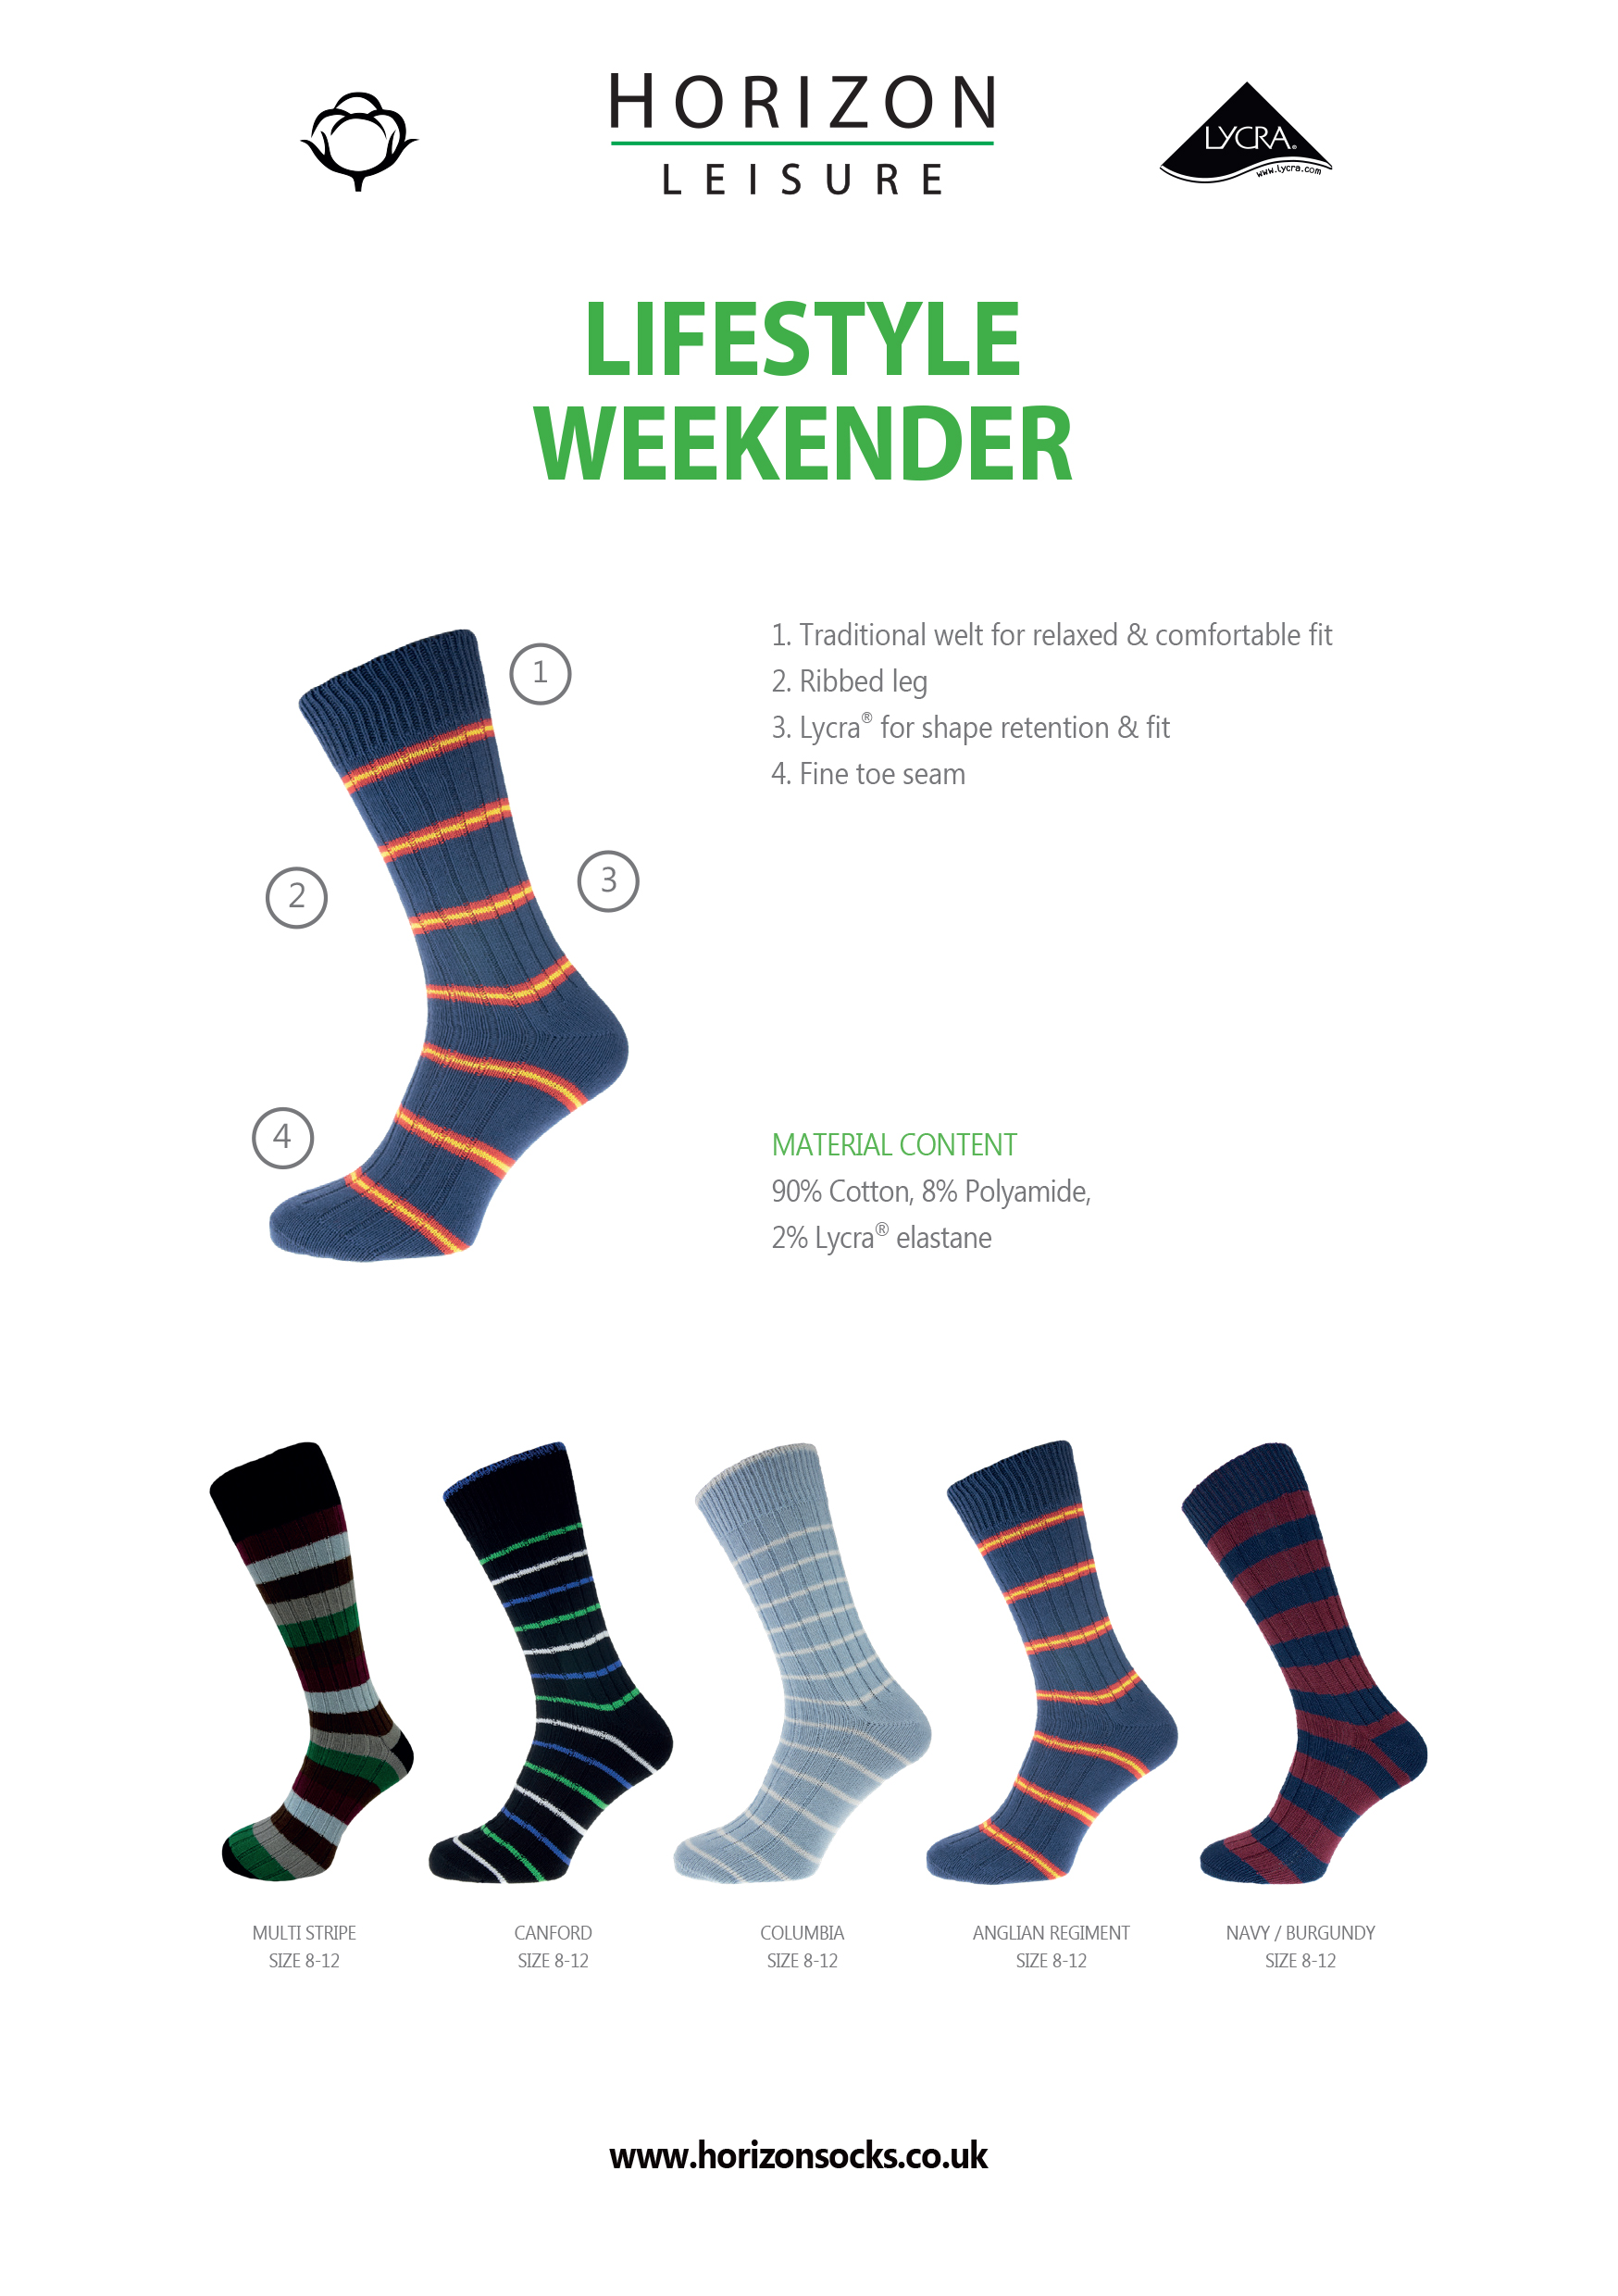 Leisure Lifestyle Weekender Socks Guide